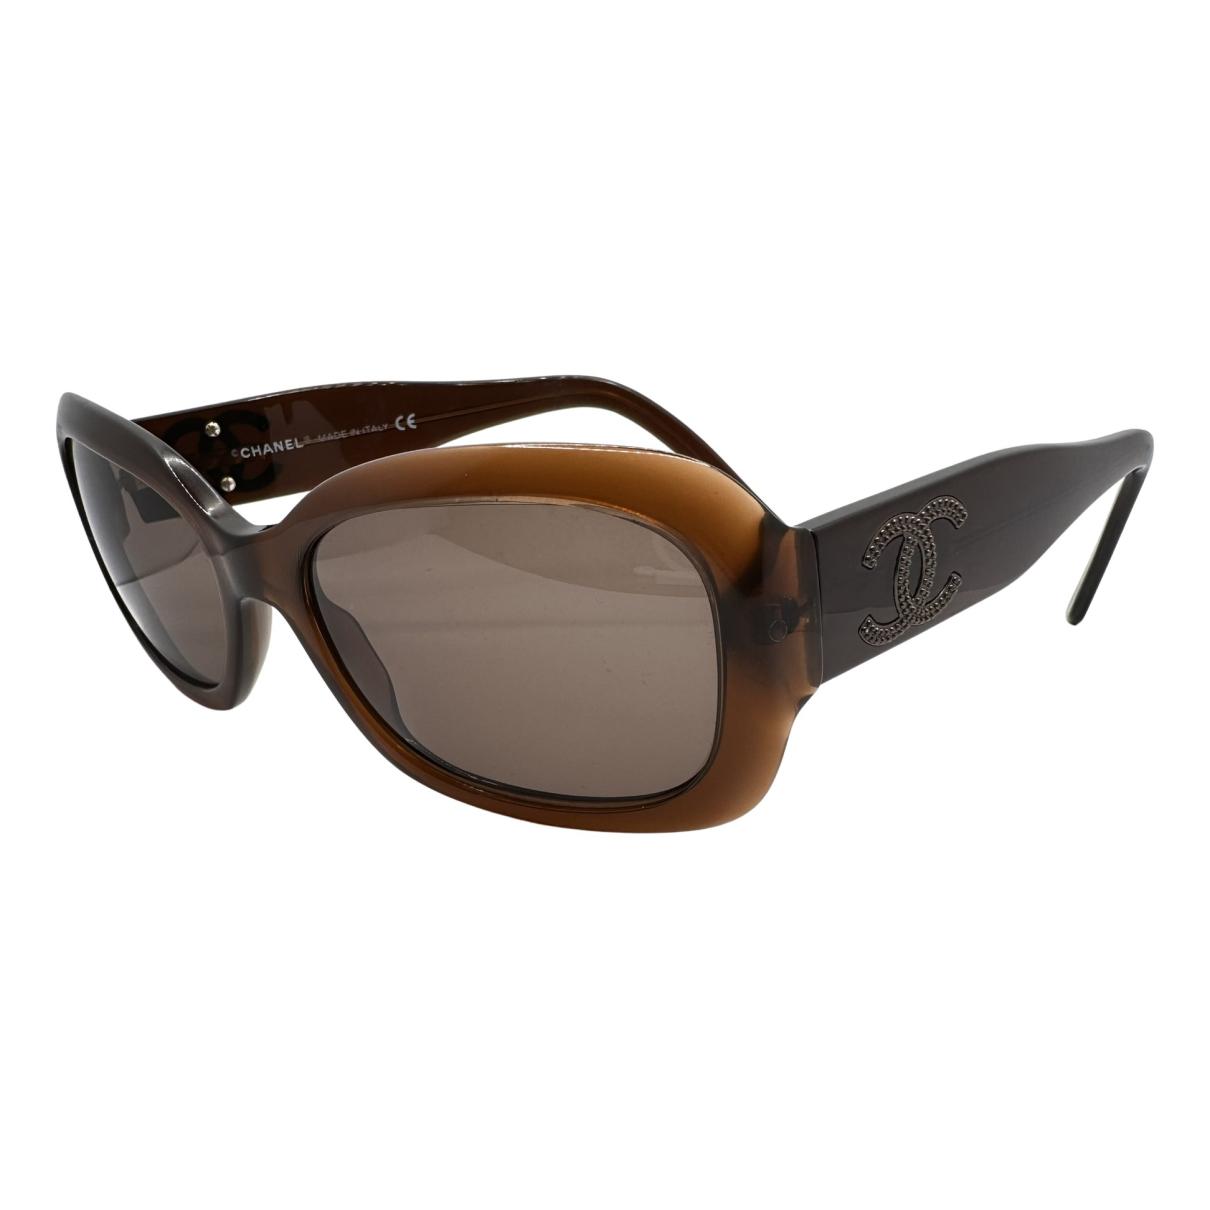 Sunglasses Chanel Brown in Plastic - 38935765